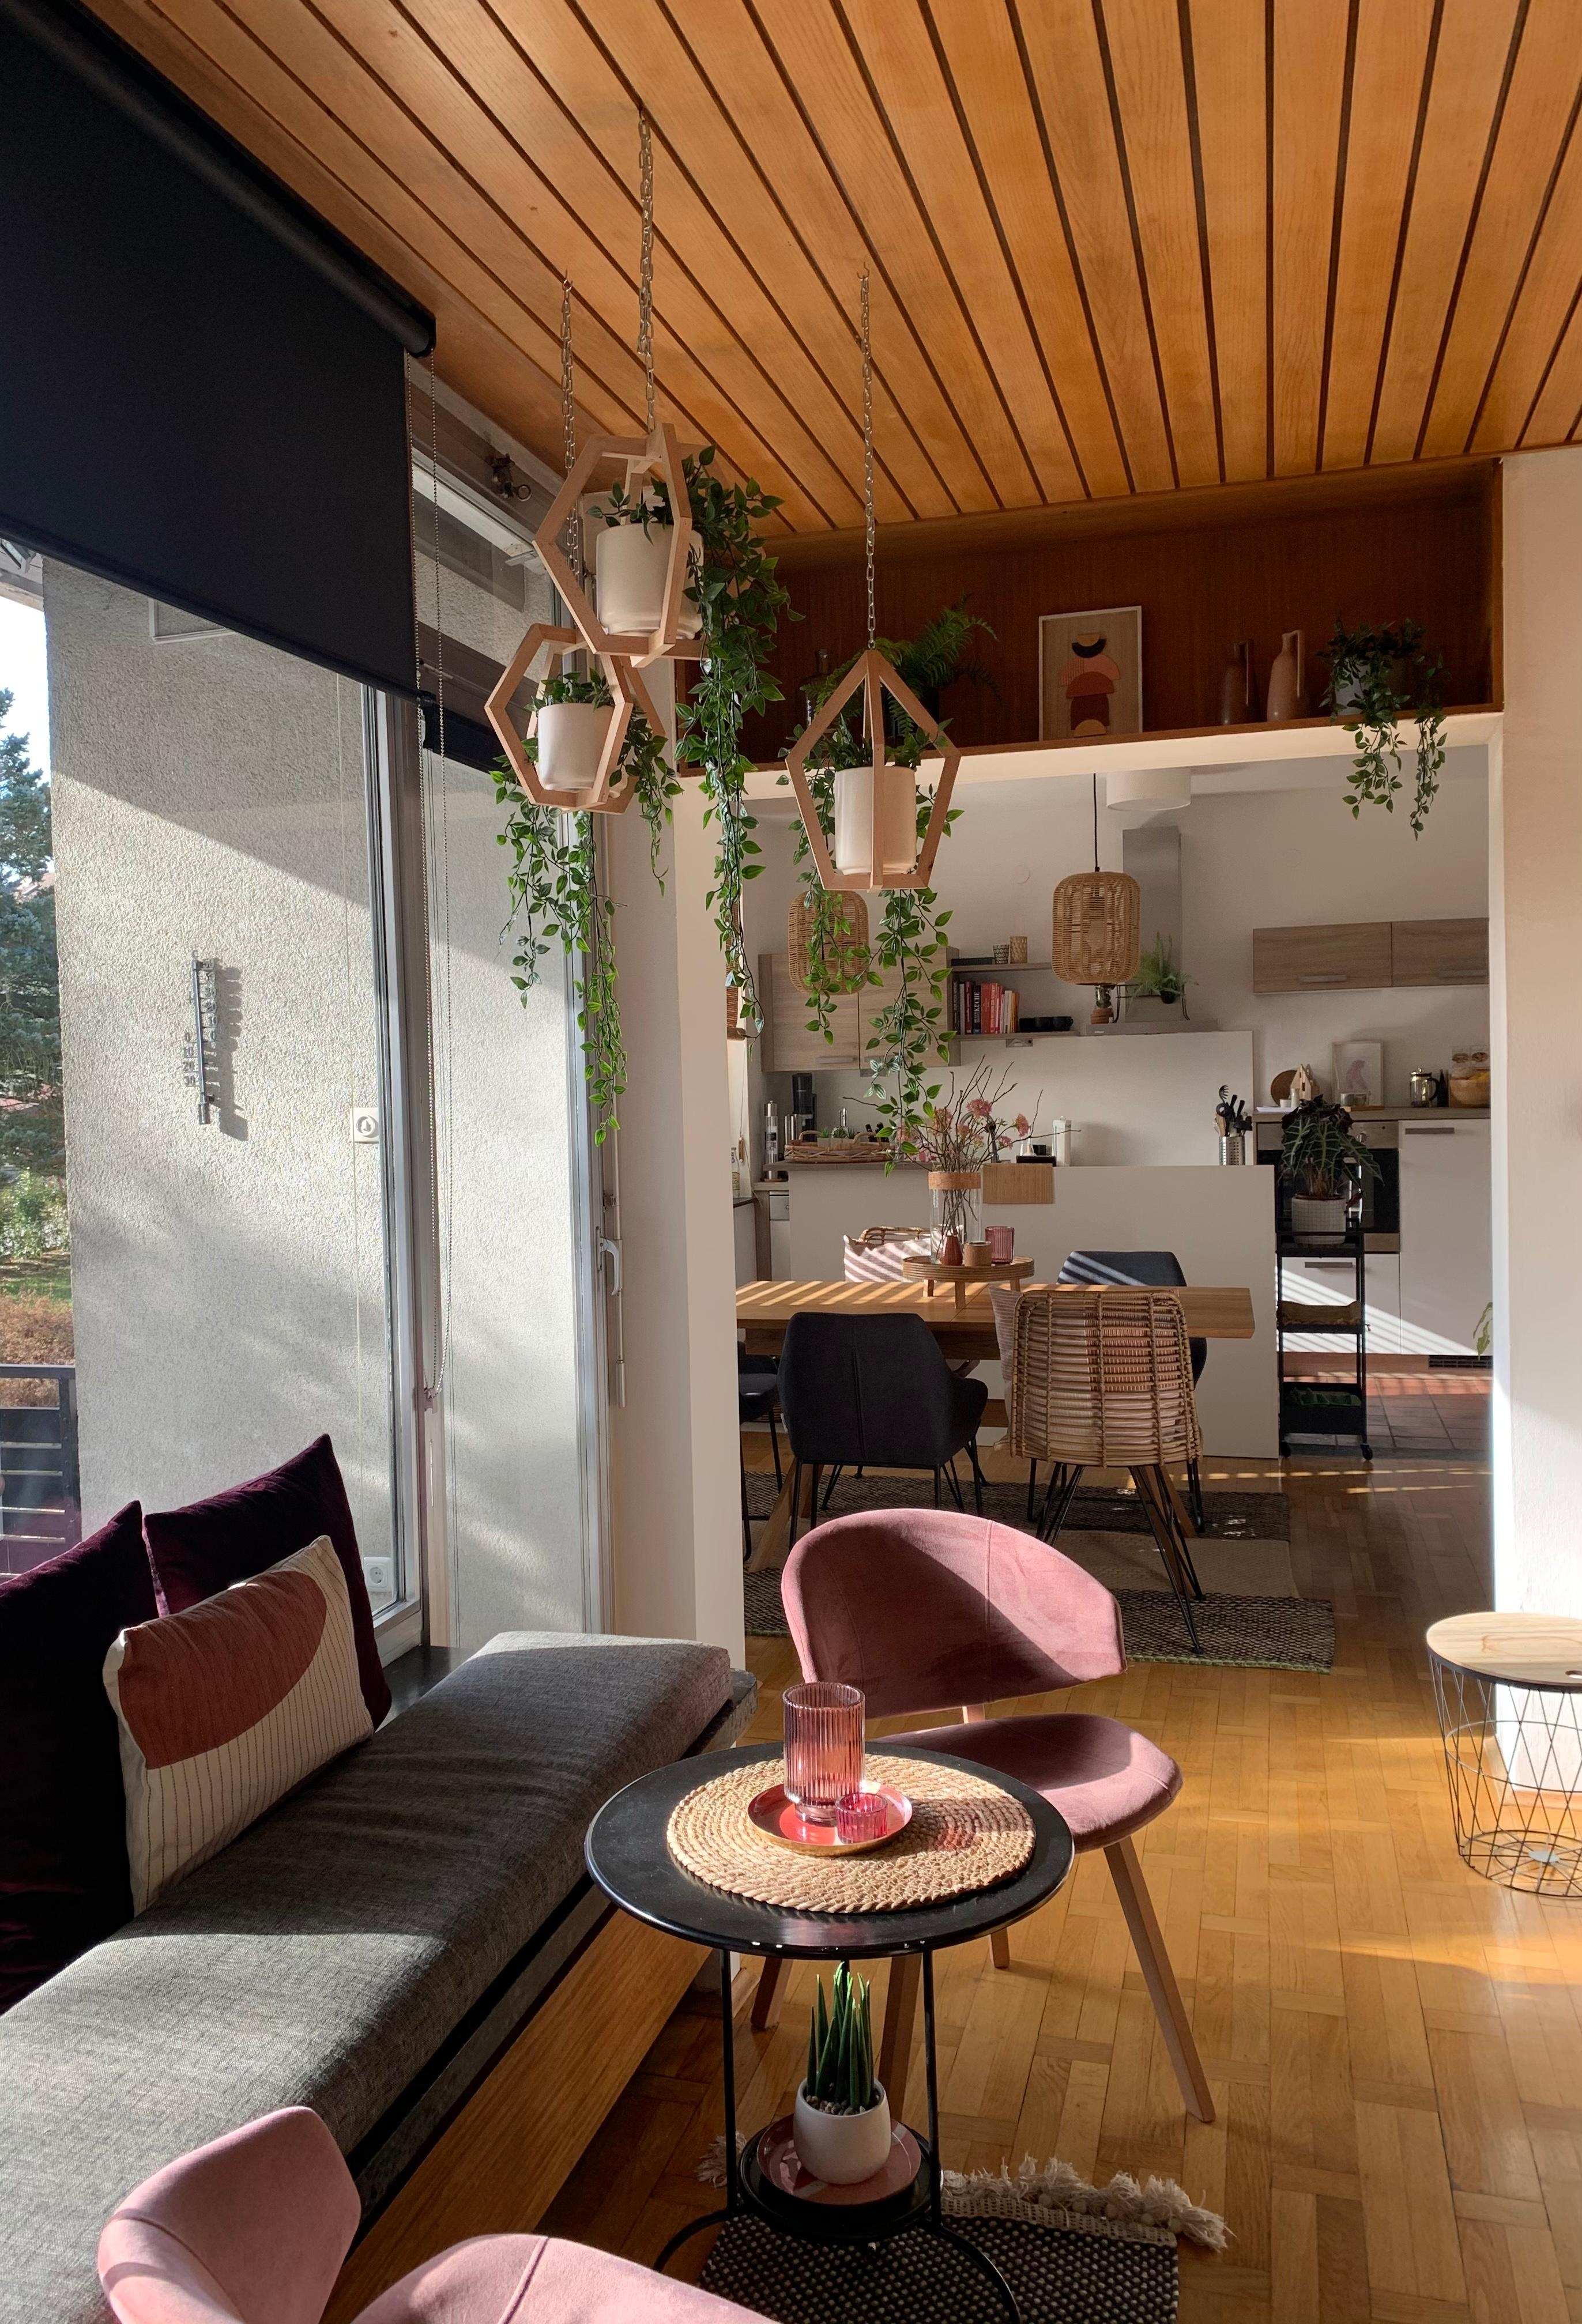 Coffeecorner | Kitchenview #newhome #interiordreams #coffeeandkitchen #ausaltmachneu #couchstyle #homestory